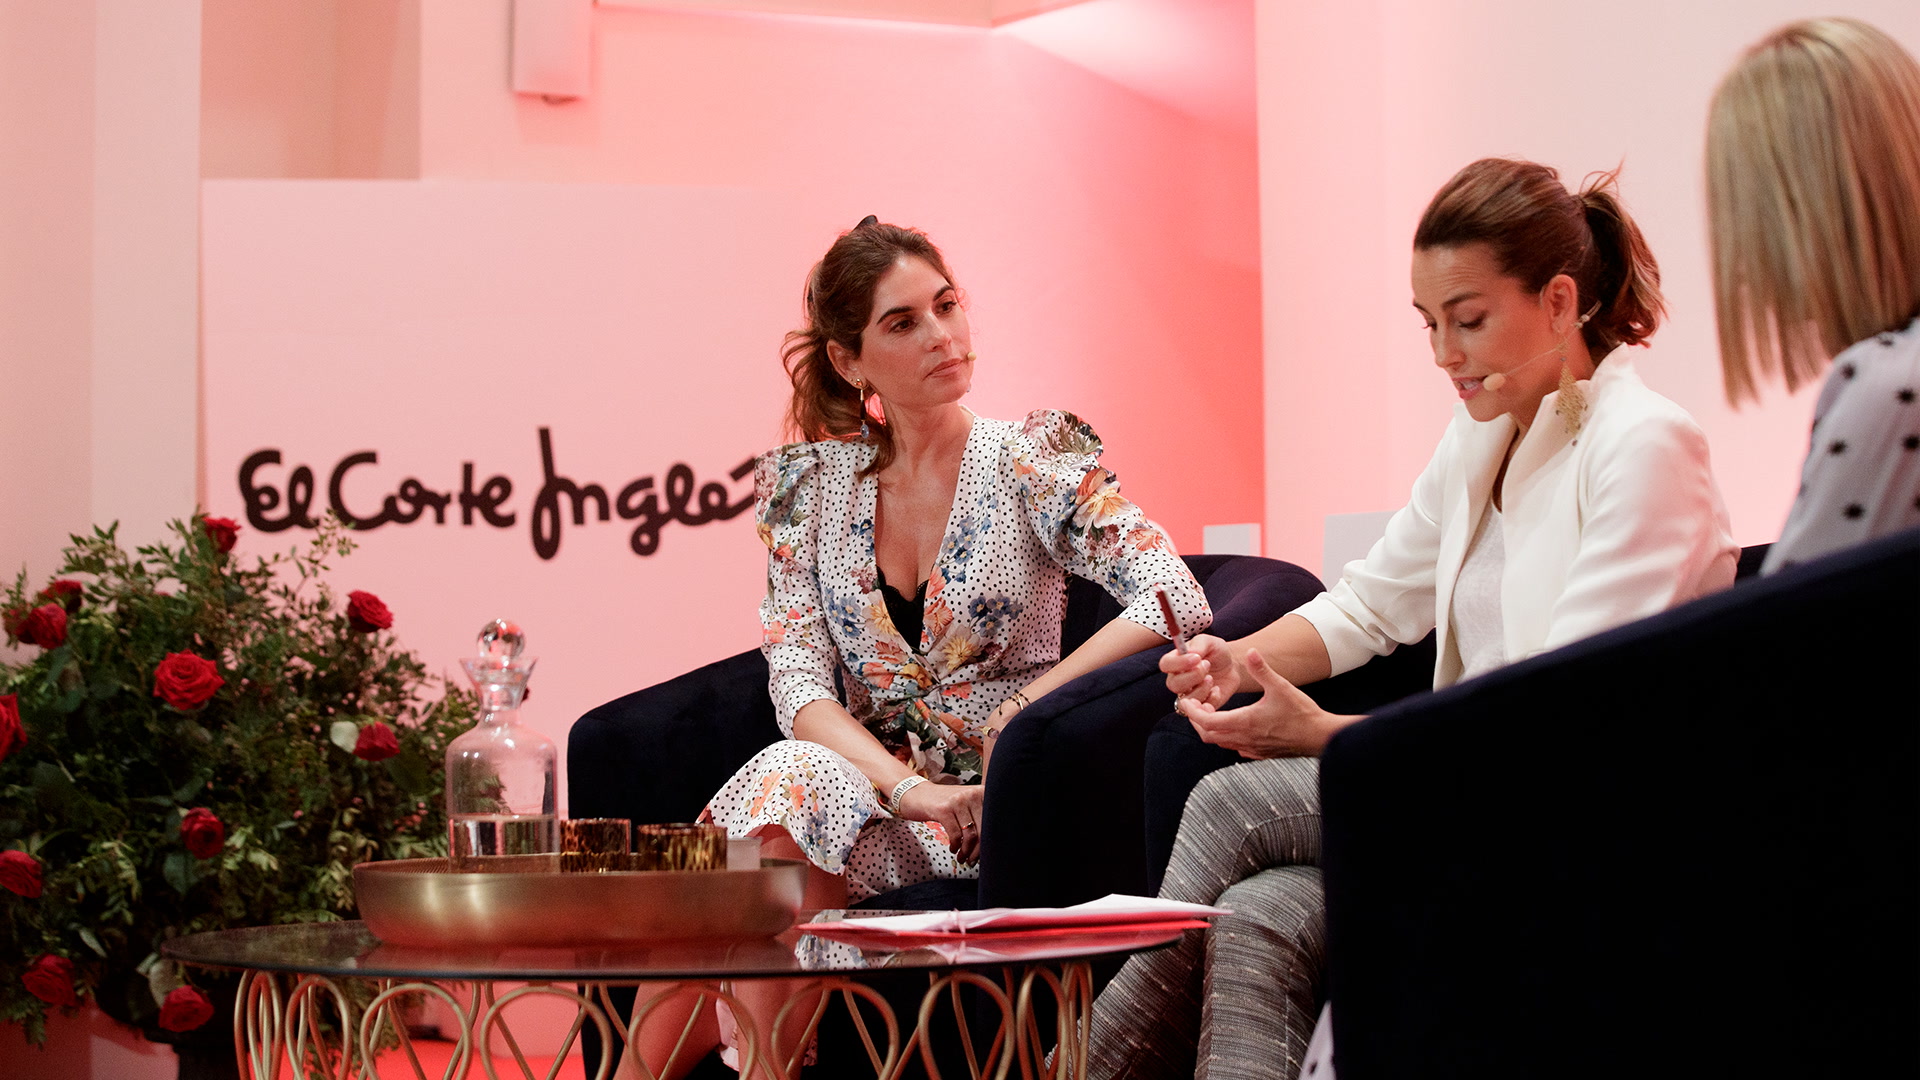 Lourdes Montes y Cristina Reyes hablan de moda y estilismo